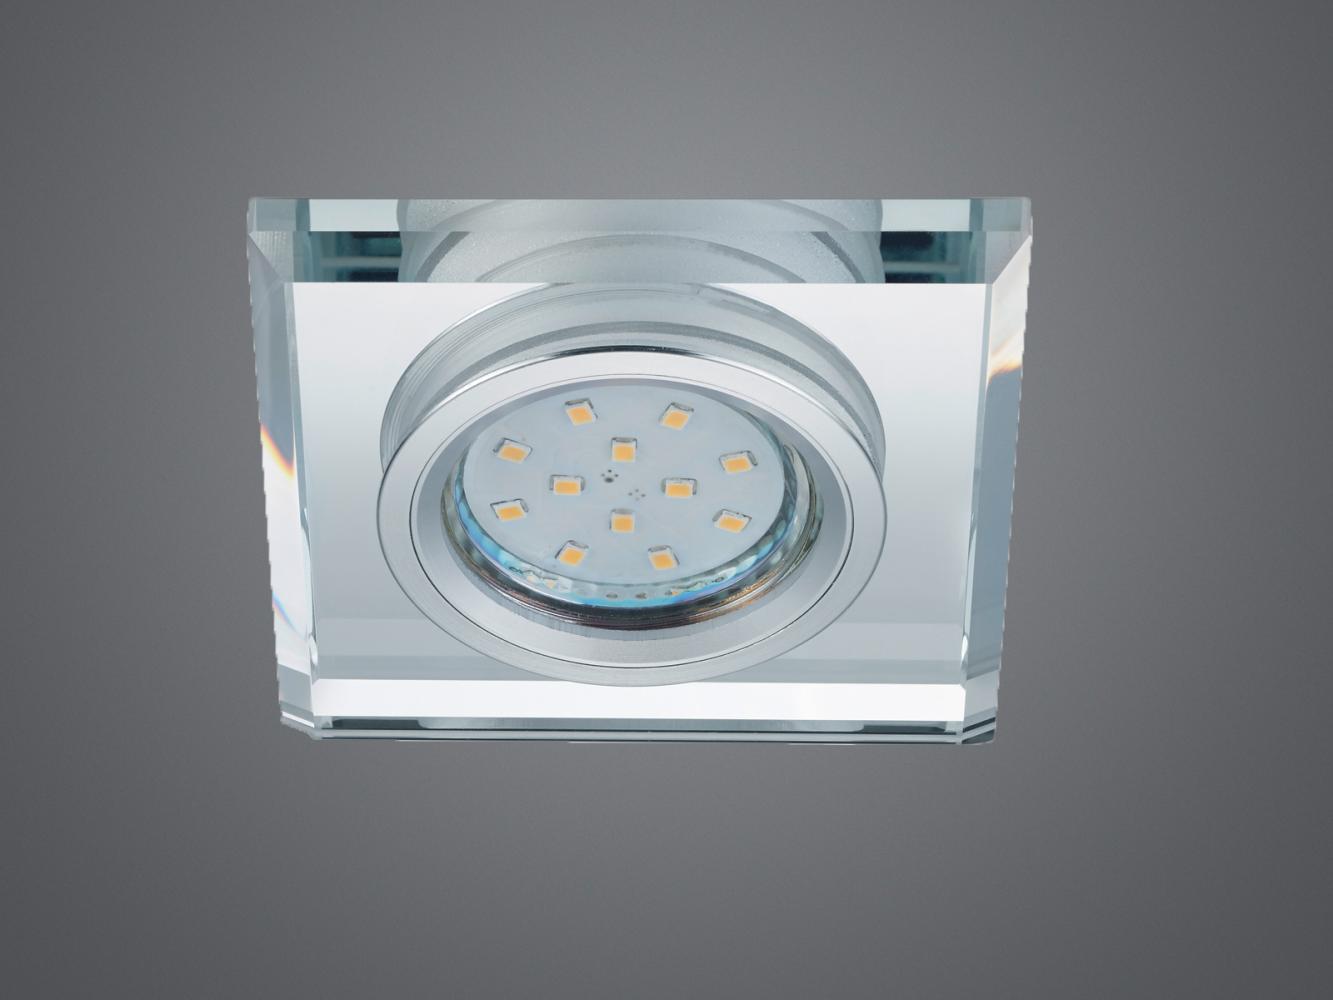 Eckiger LED Deckeneinbaustrahler in Silber Chrom mit Kristallglas 9 x 9cm Bild 1